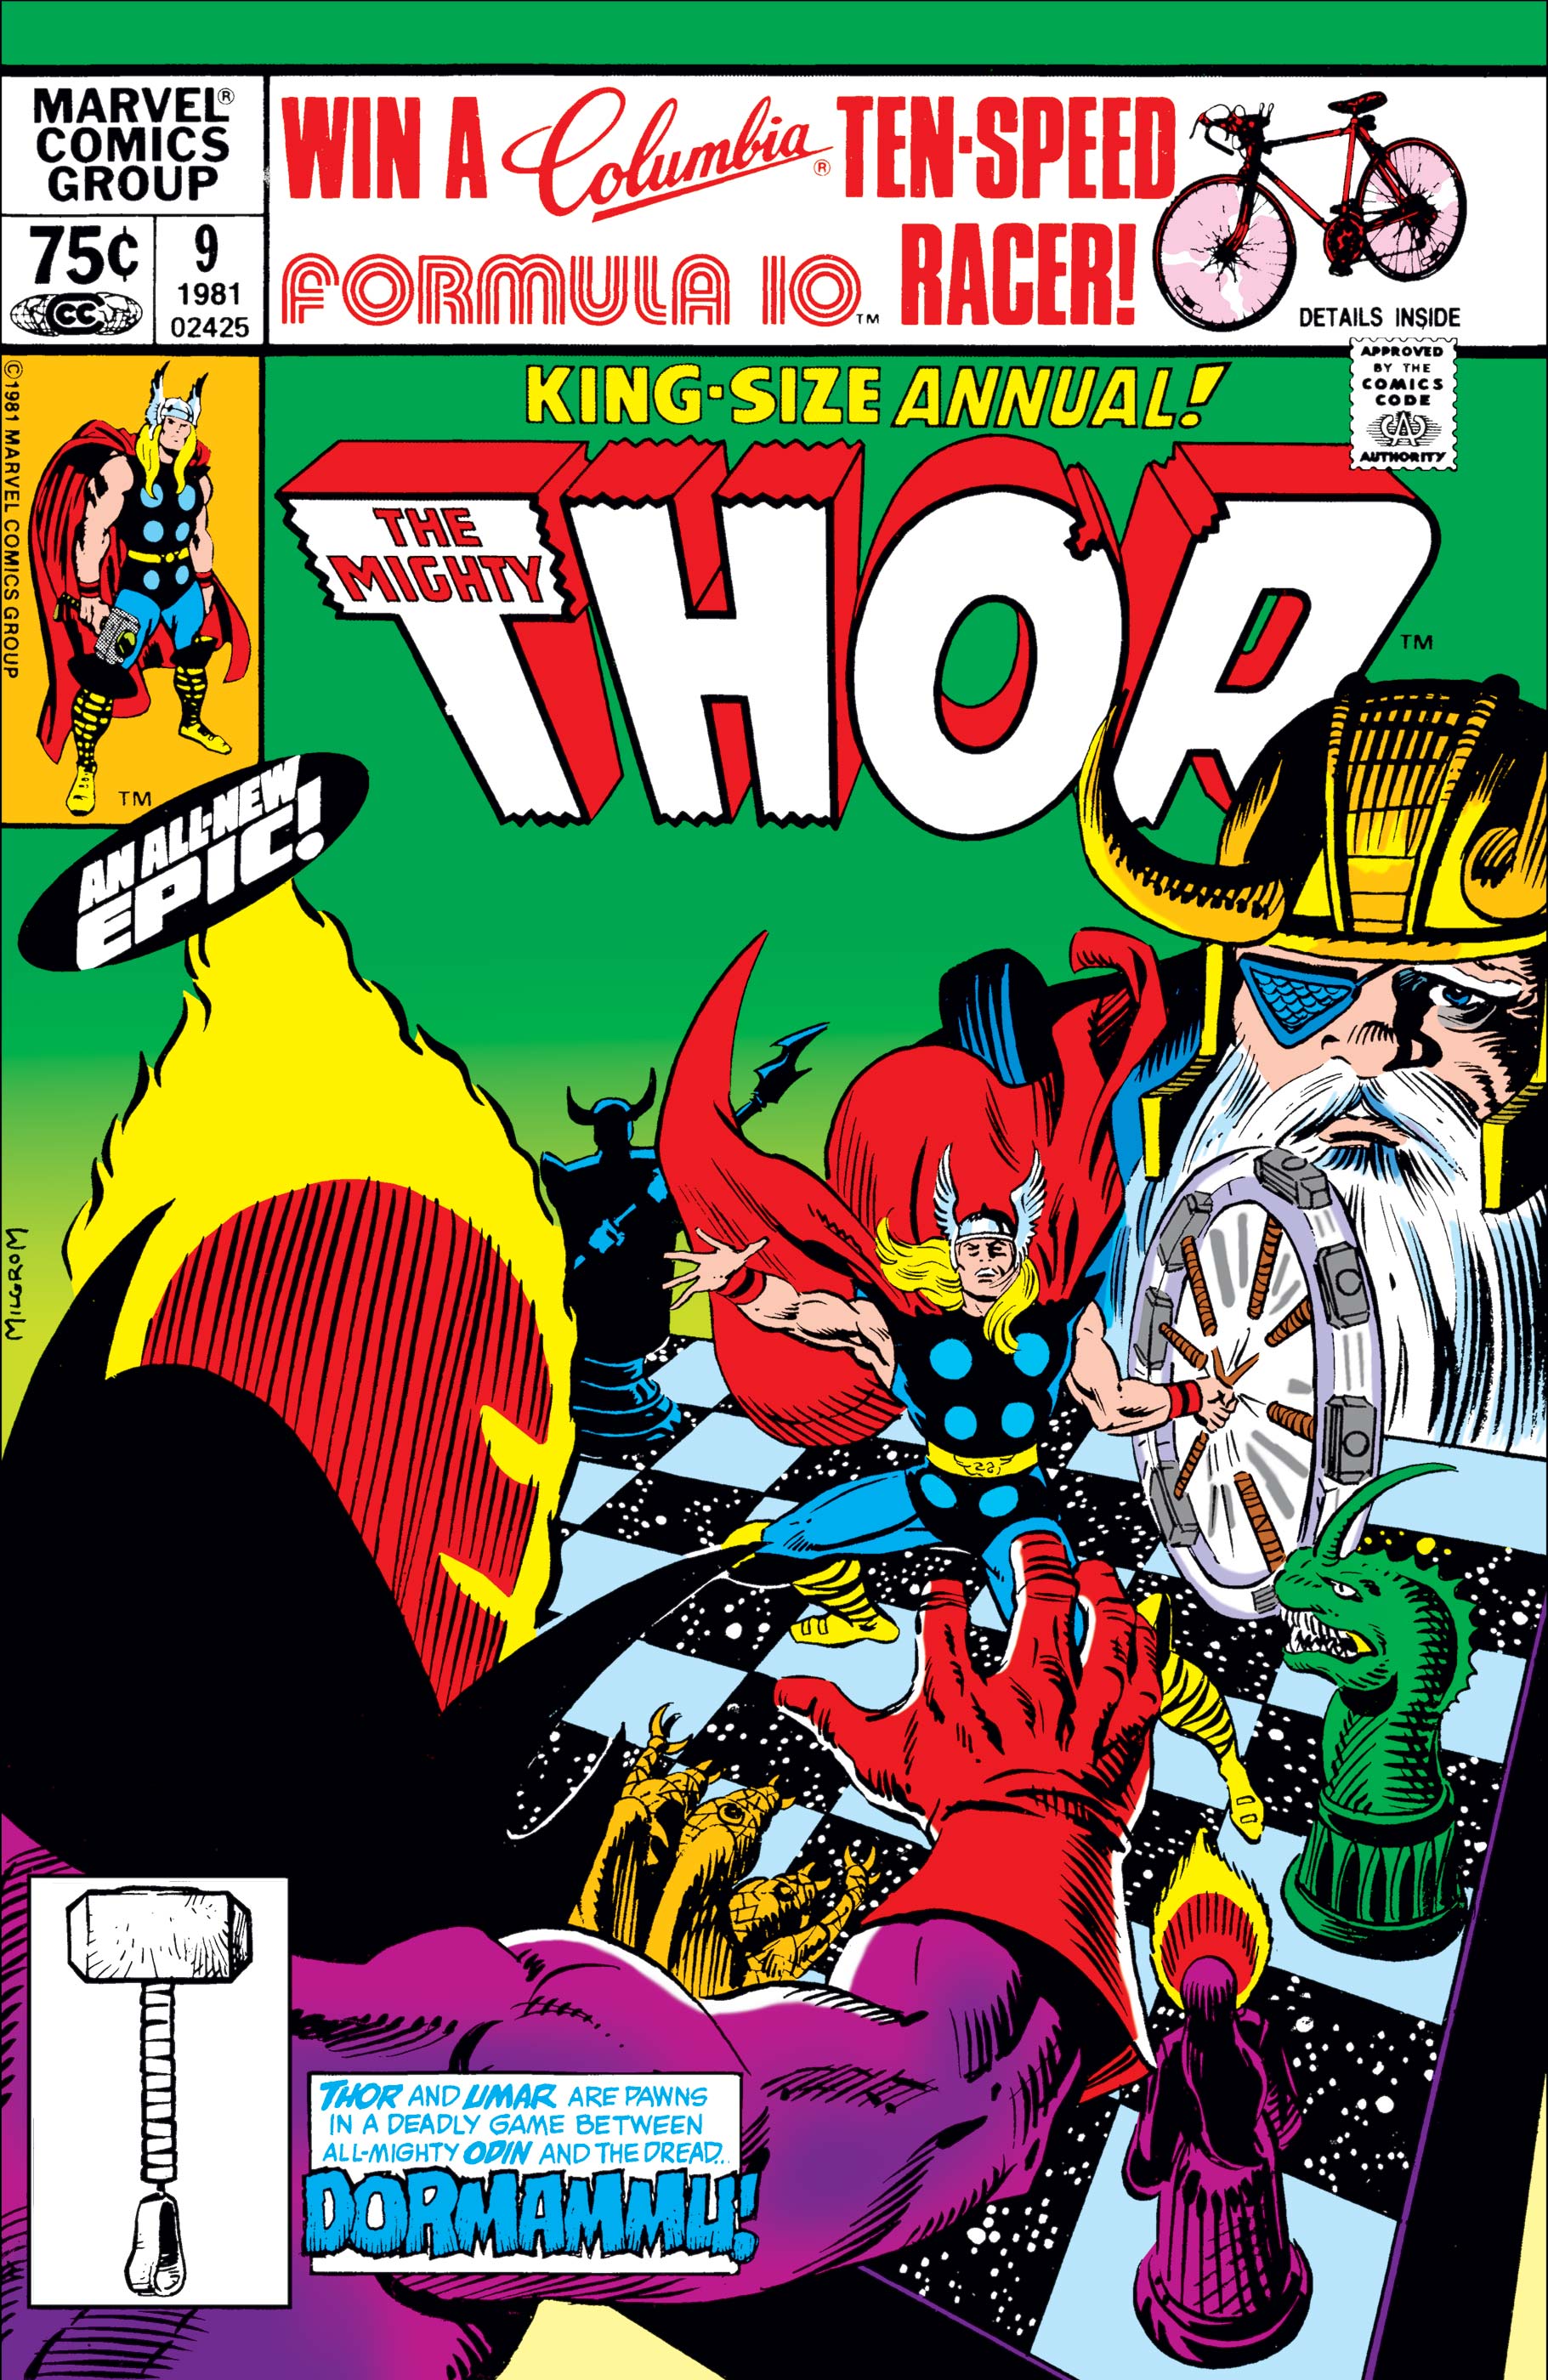 Thor Annual (1966) #9